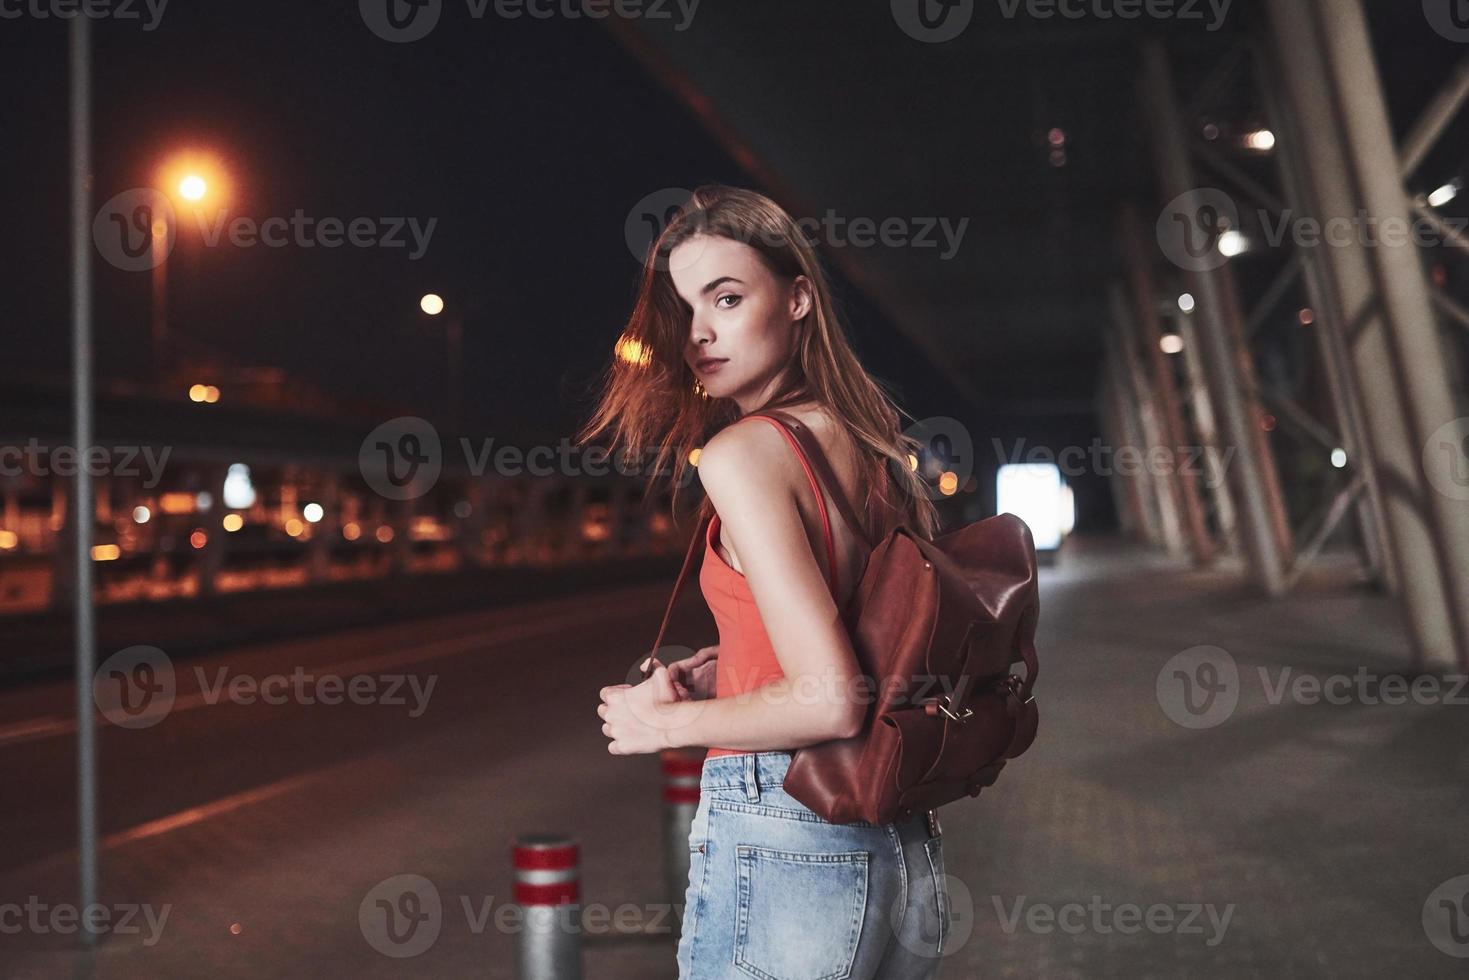 een jong mooi meisje met een rugzak achter haar schouders staat op een warme zomeravond op straat in de buurt van een luchthaven of een treinstation. ze is net aangekomen en wacht op een taxi of haar vrienden foto